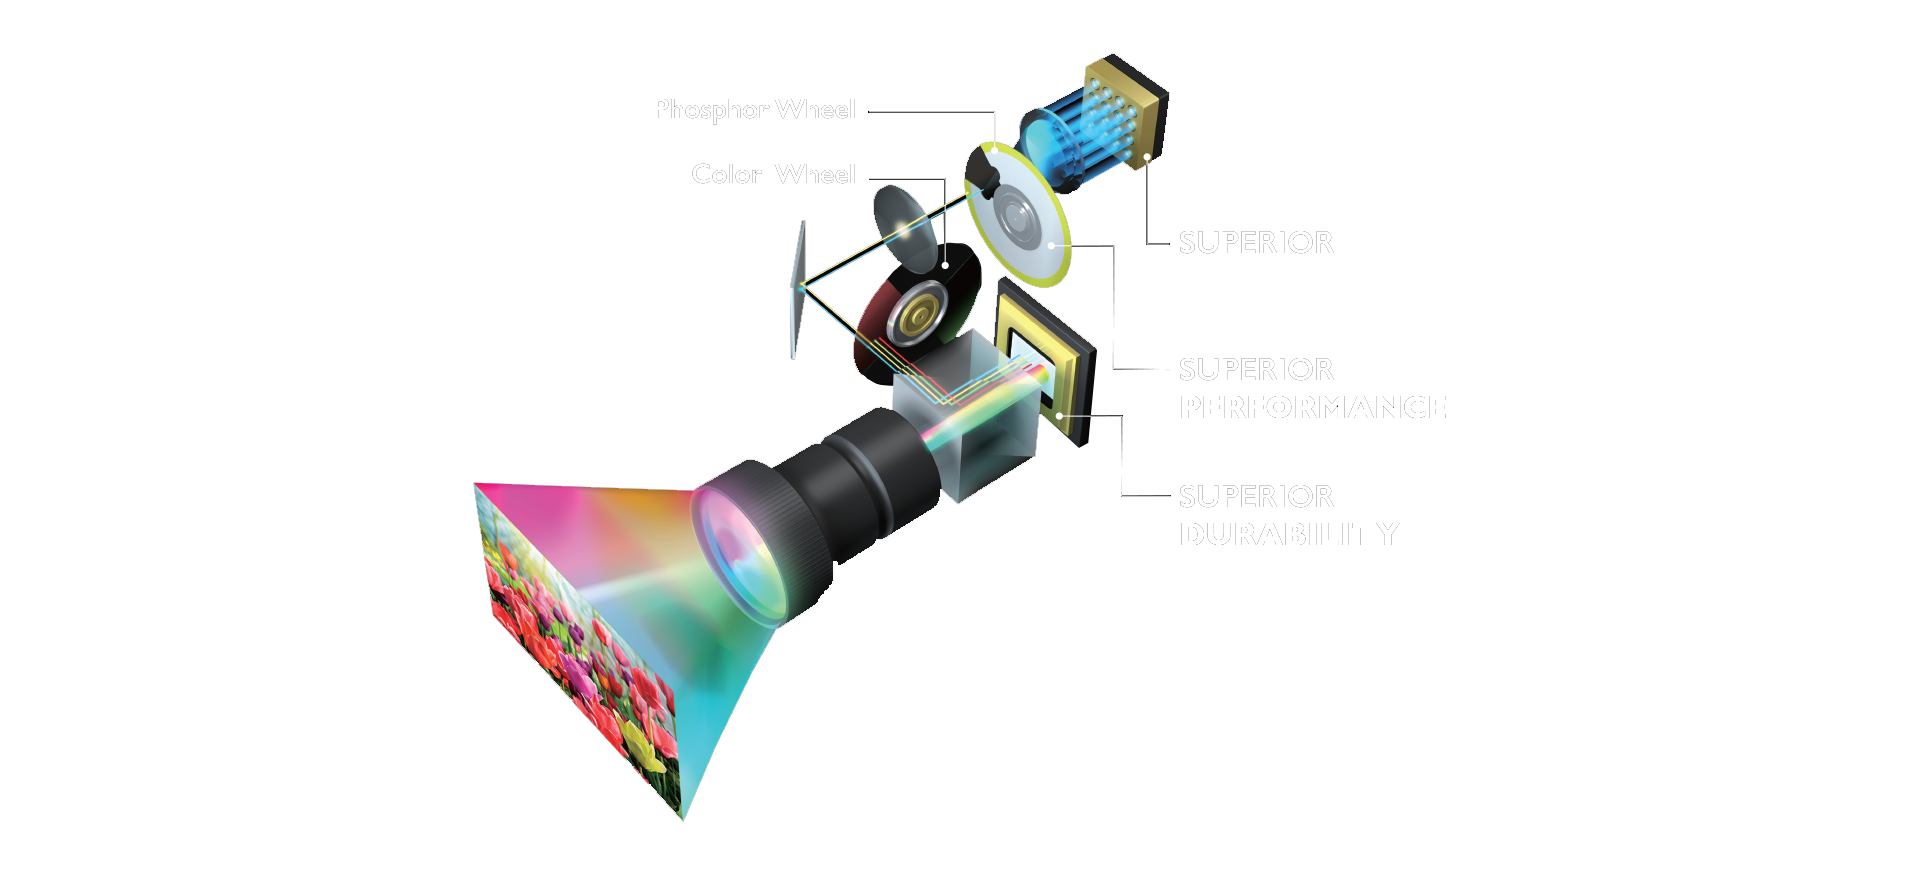 Máy chiếu BlueCore Laser 4K BenQ từ nhãn hiệu DLP số 1 thế giới 